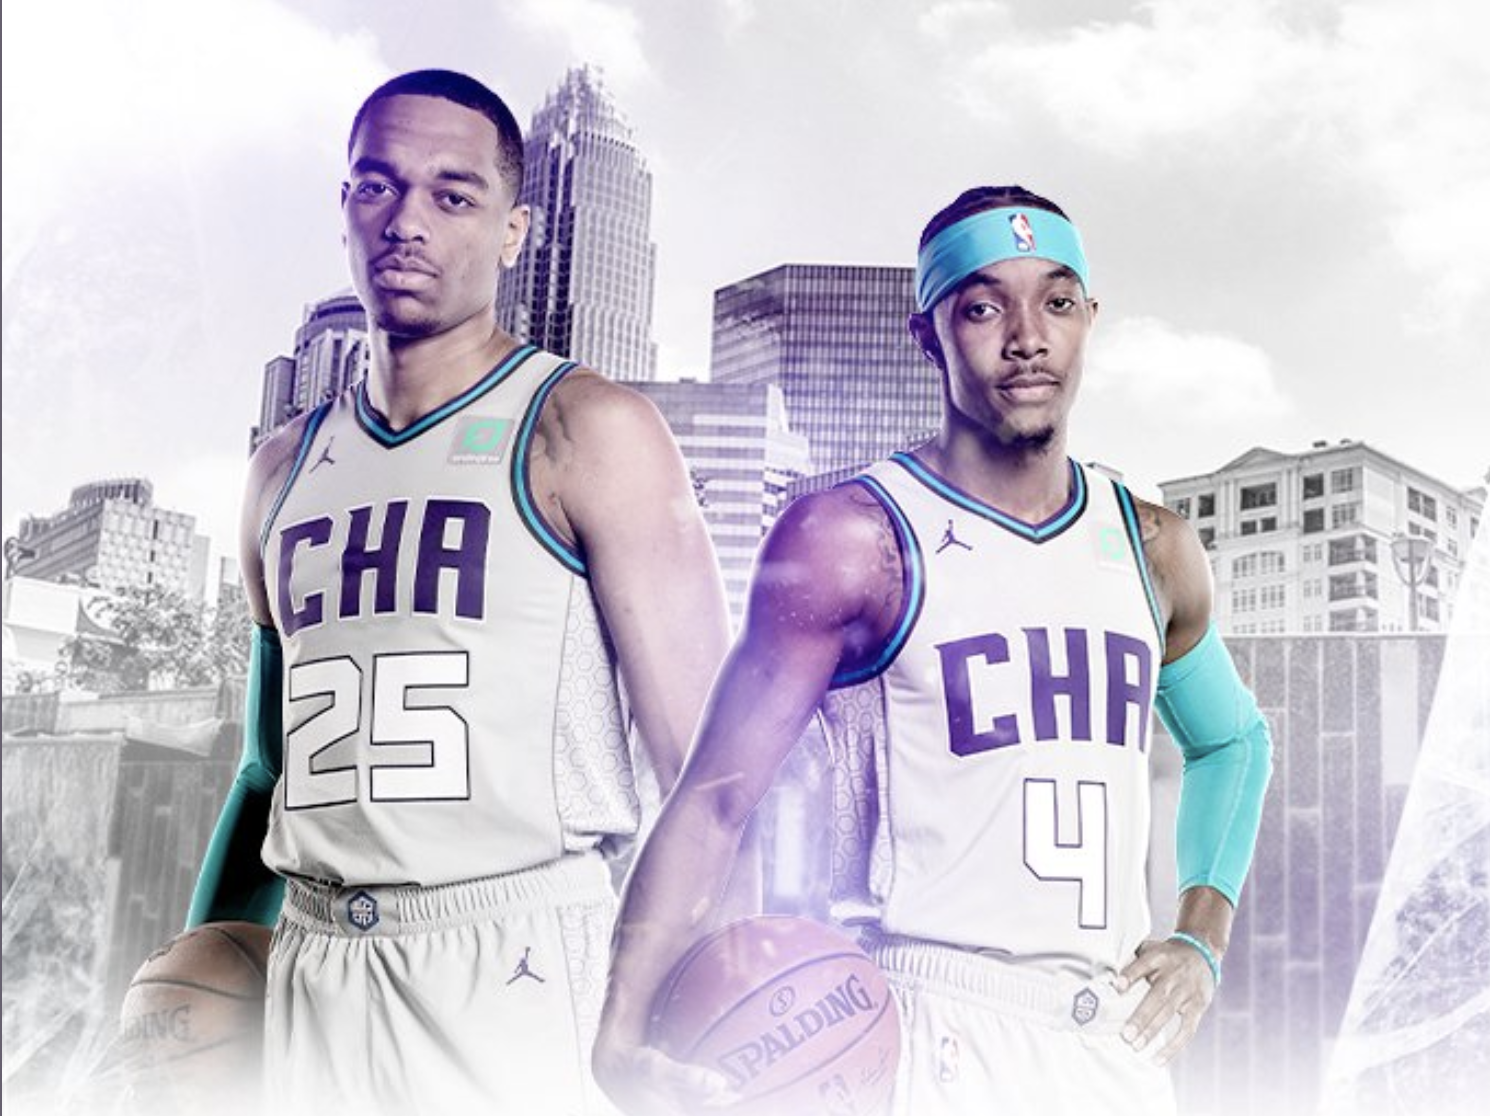 Photos: Charlotte Hornets unveil new City Edition uniforms